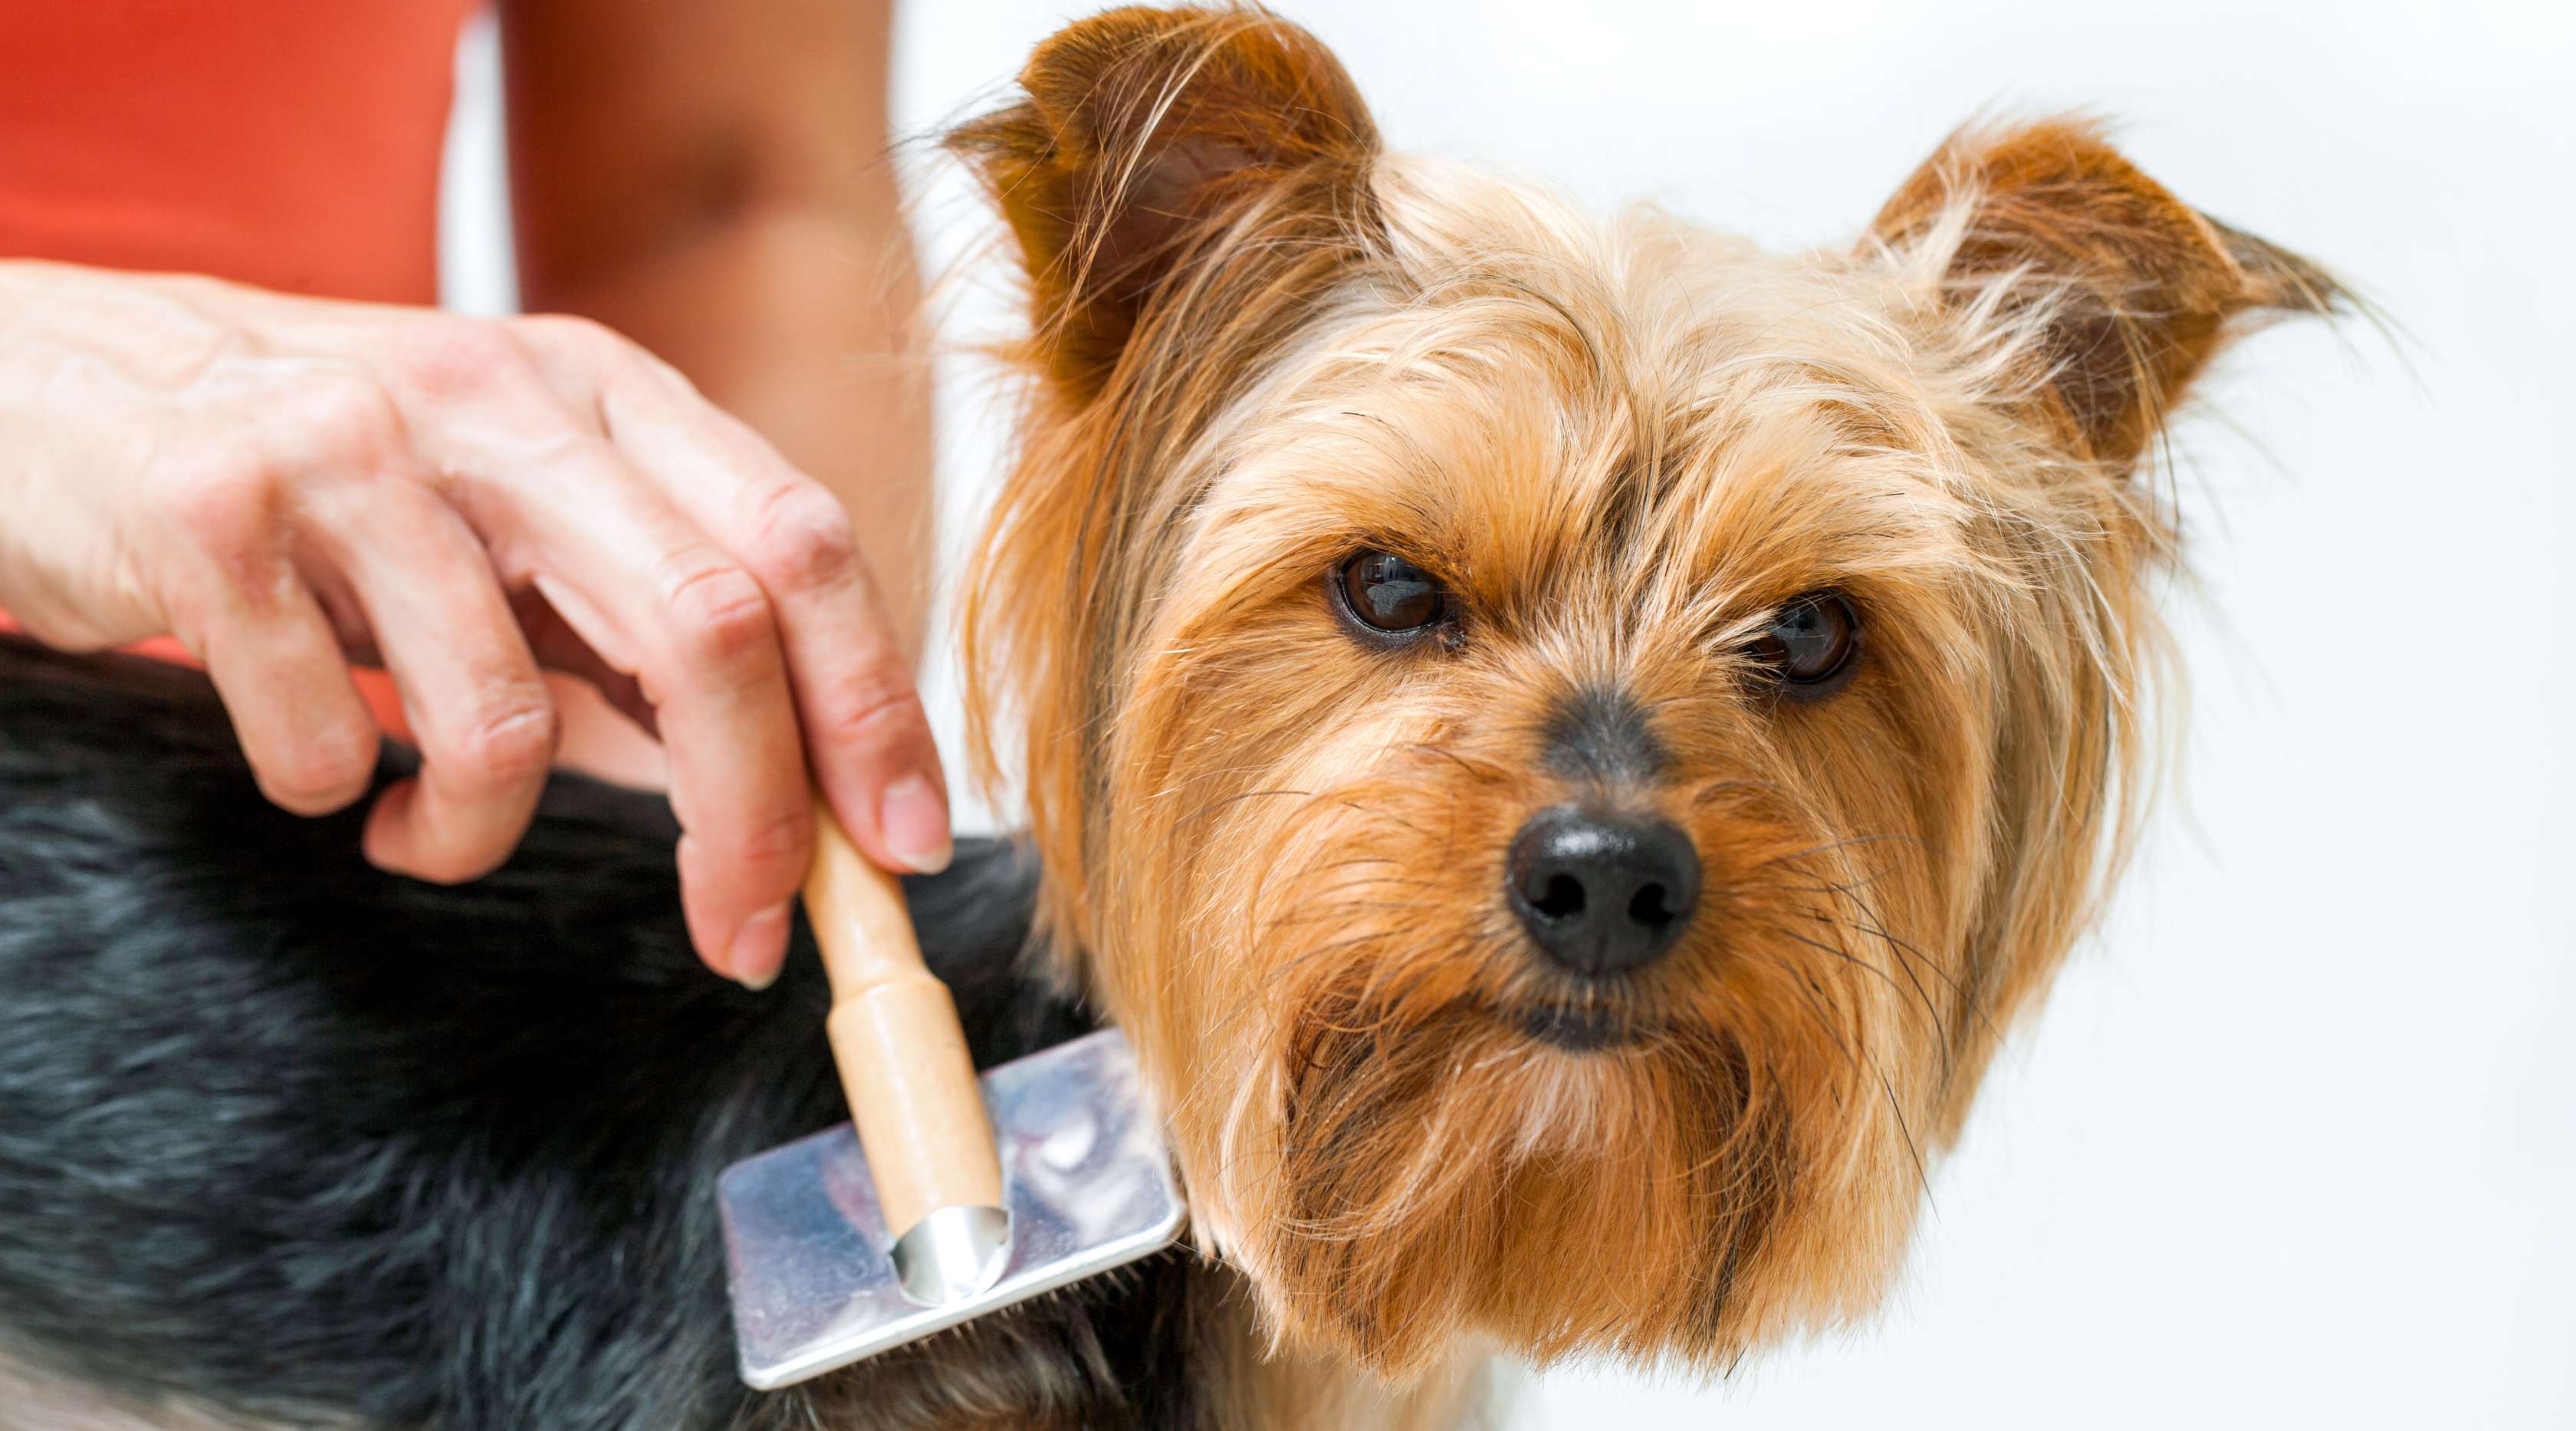  Allianz - Fellpflege Hund: Hund wird mit einer Hundebürste gebürstet